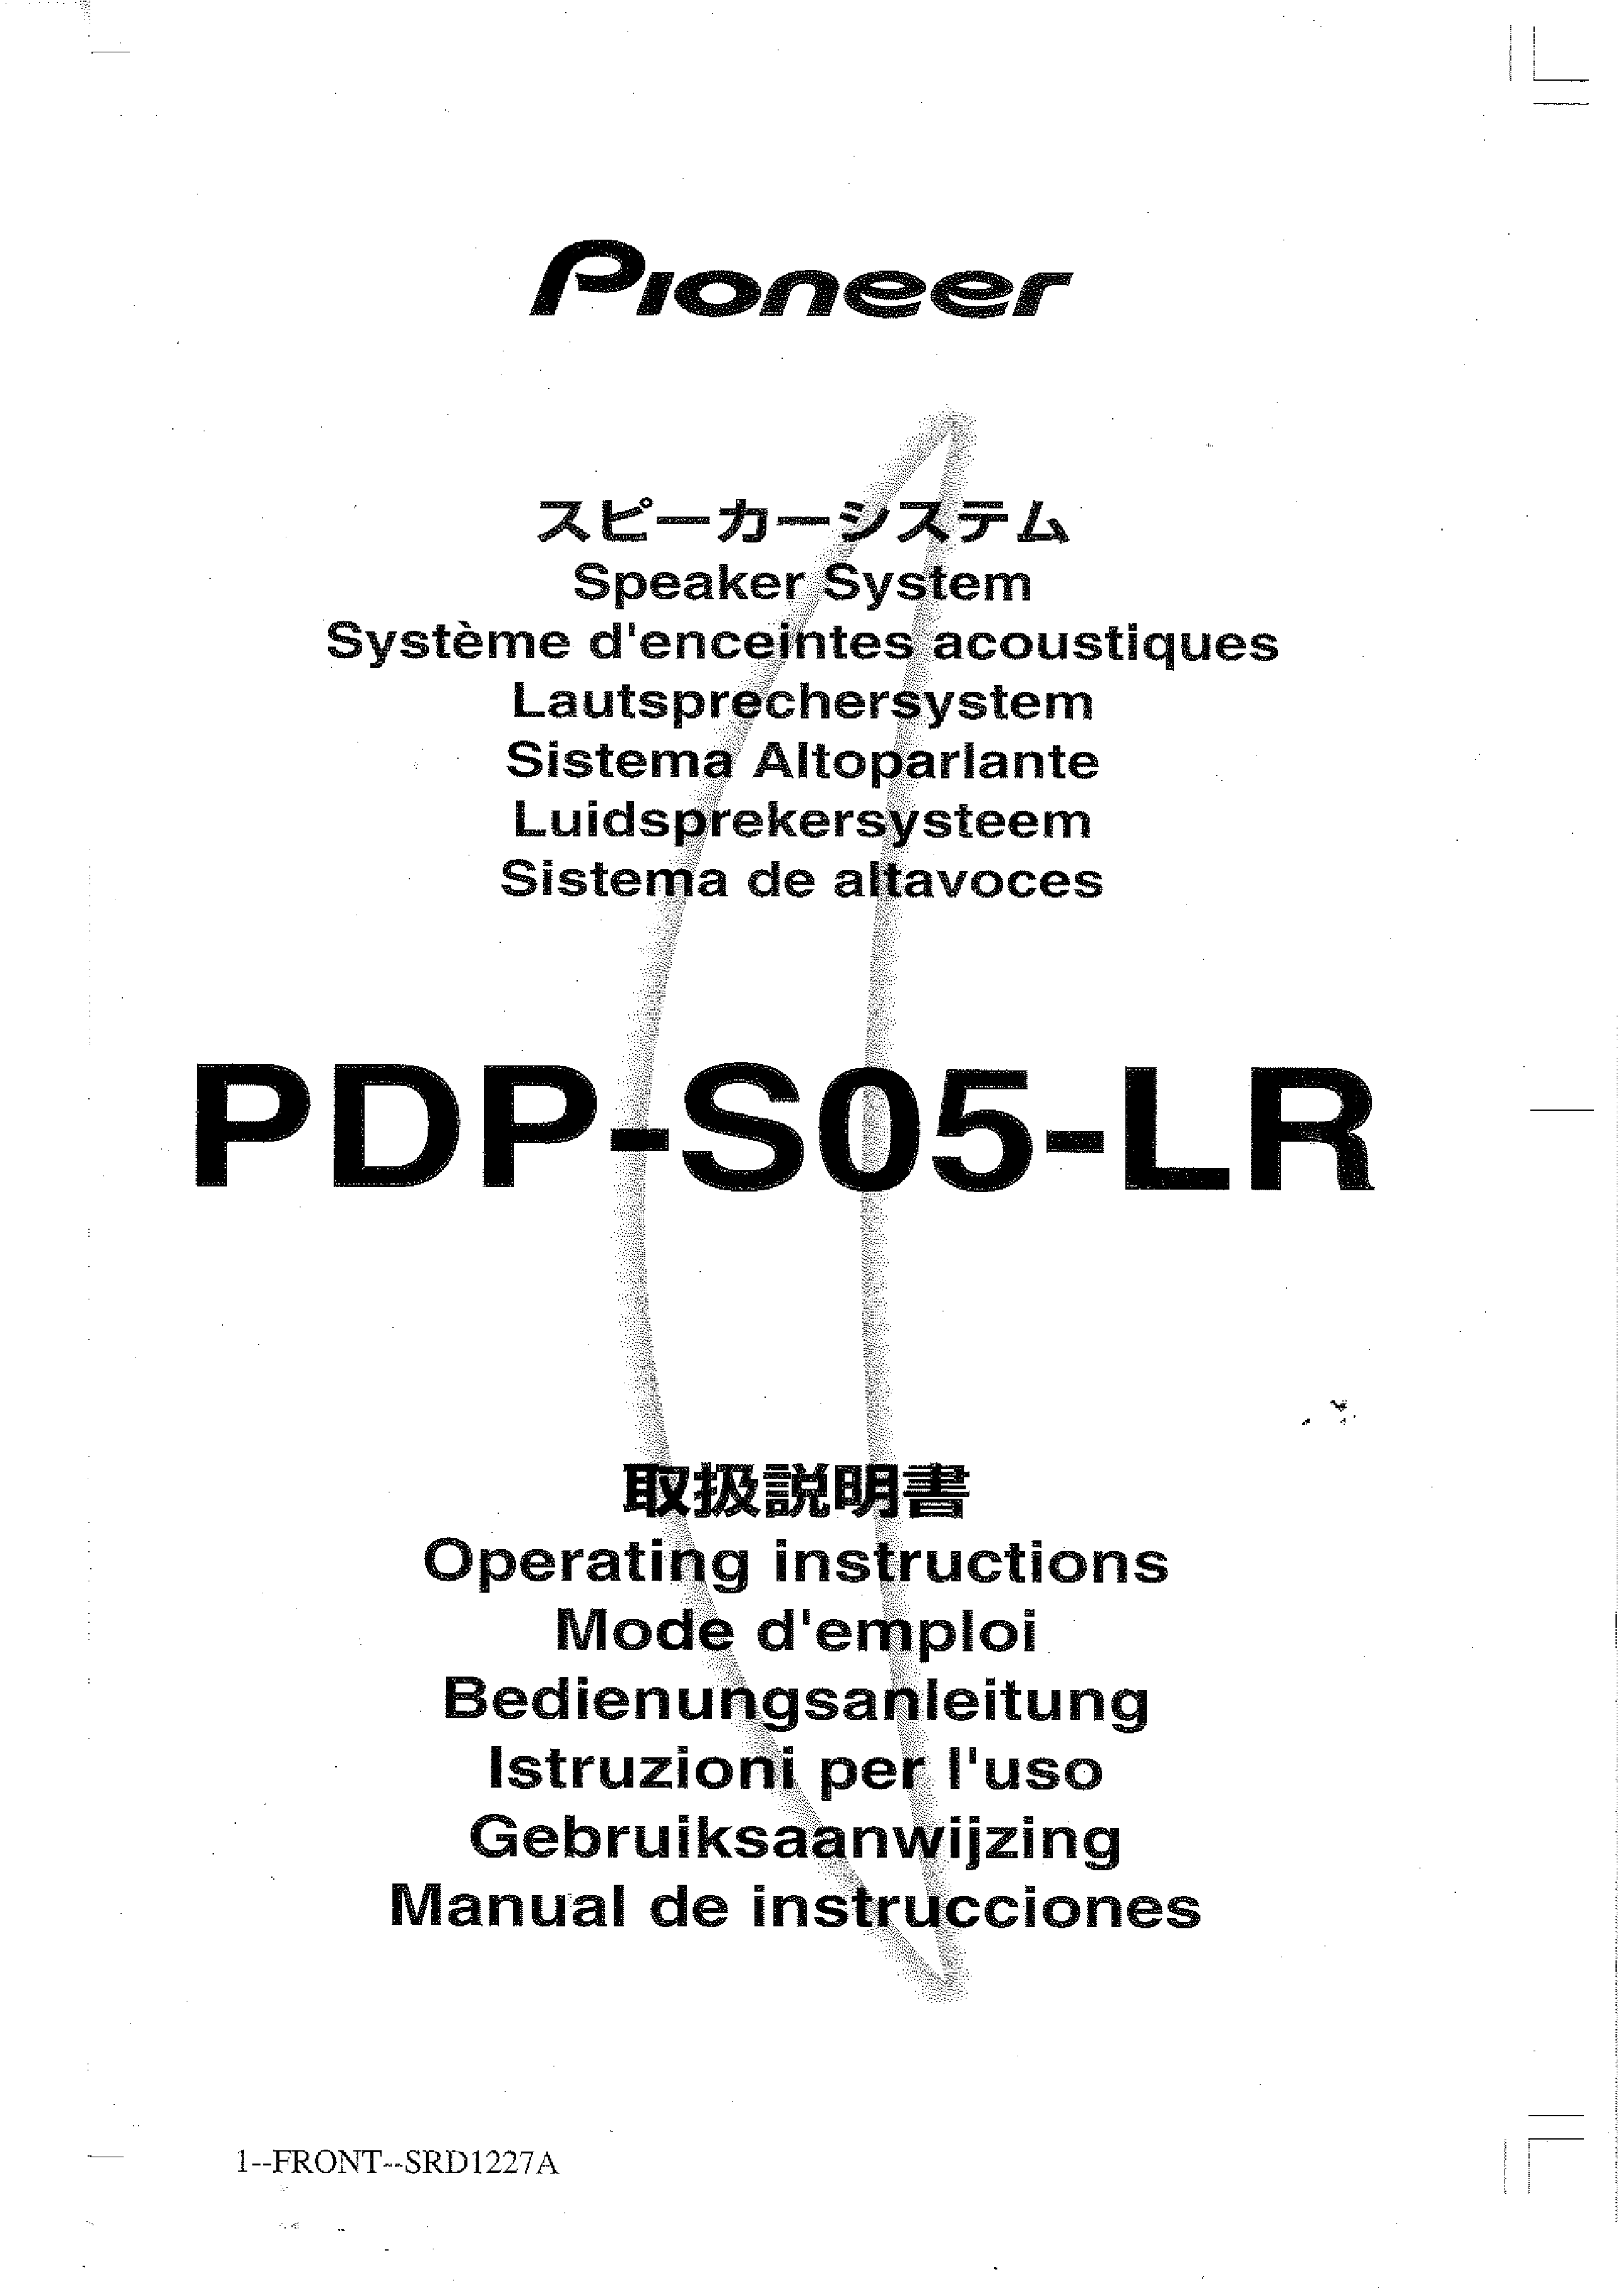 PIONEER PDPS05LR - Owner's Manual Immediate Download